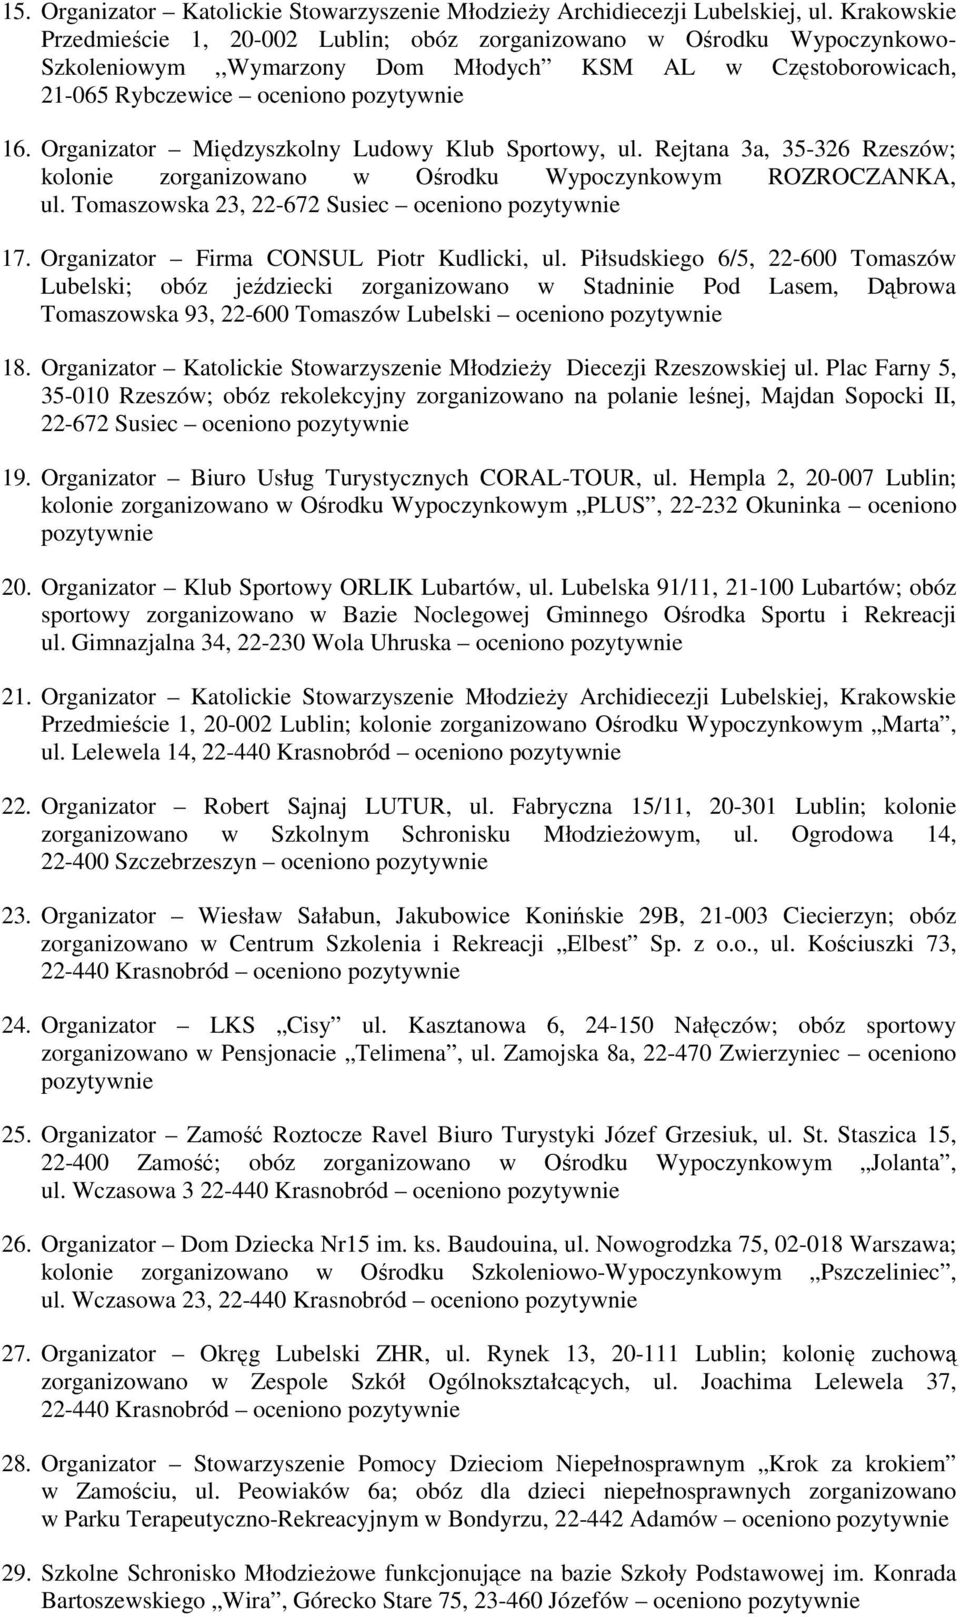 Organizator Międzyszkolny Ludowy Klub Sportowy, ul. Rejtana 3a, 35-326 Rzeszów; kolonie zorganizowano w Ośrodku Wypoczynkowym ROZROCZANKA, ul. Tomaszowska 23, 22-672 Susiec oceniono 17.